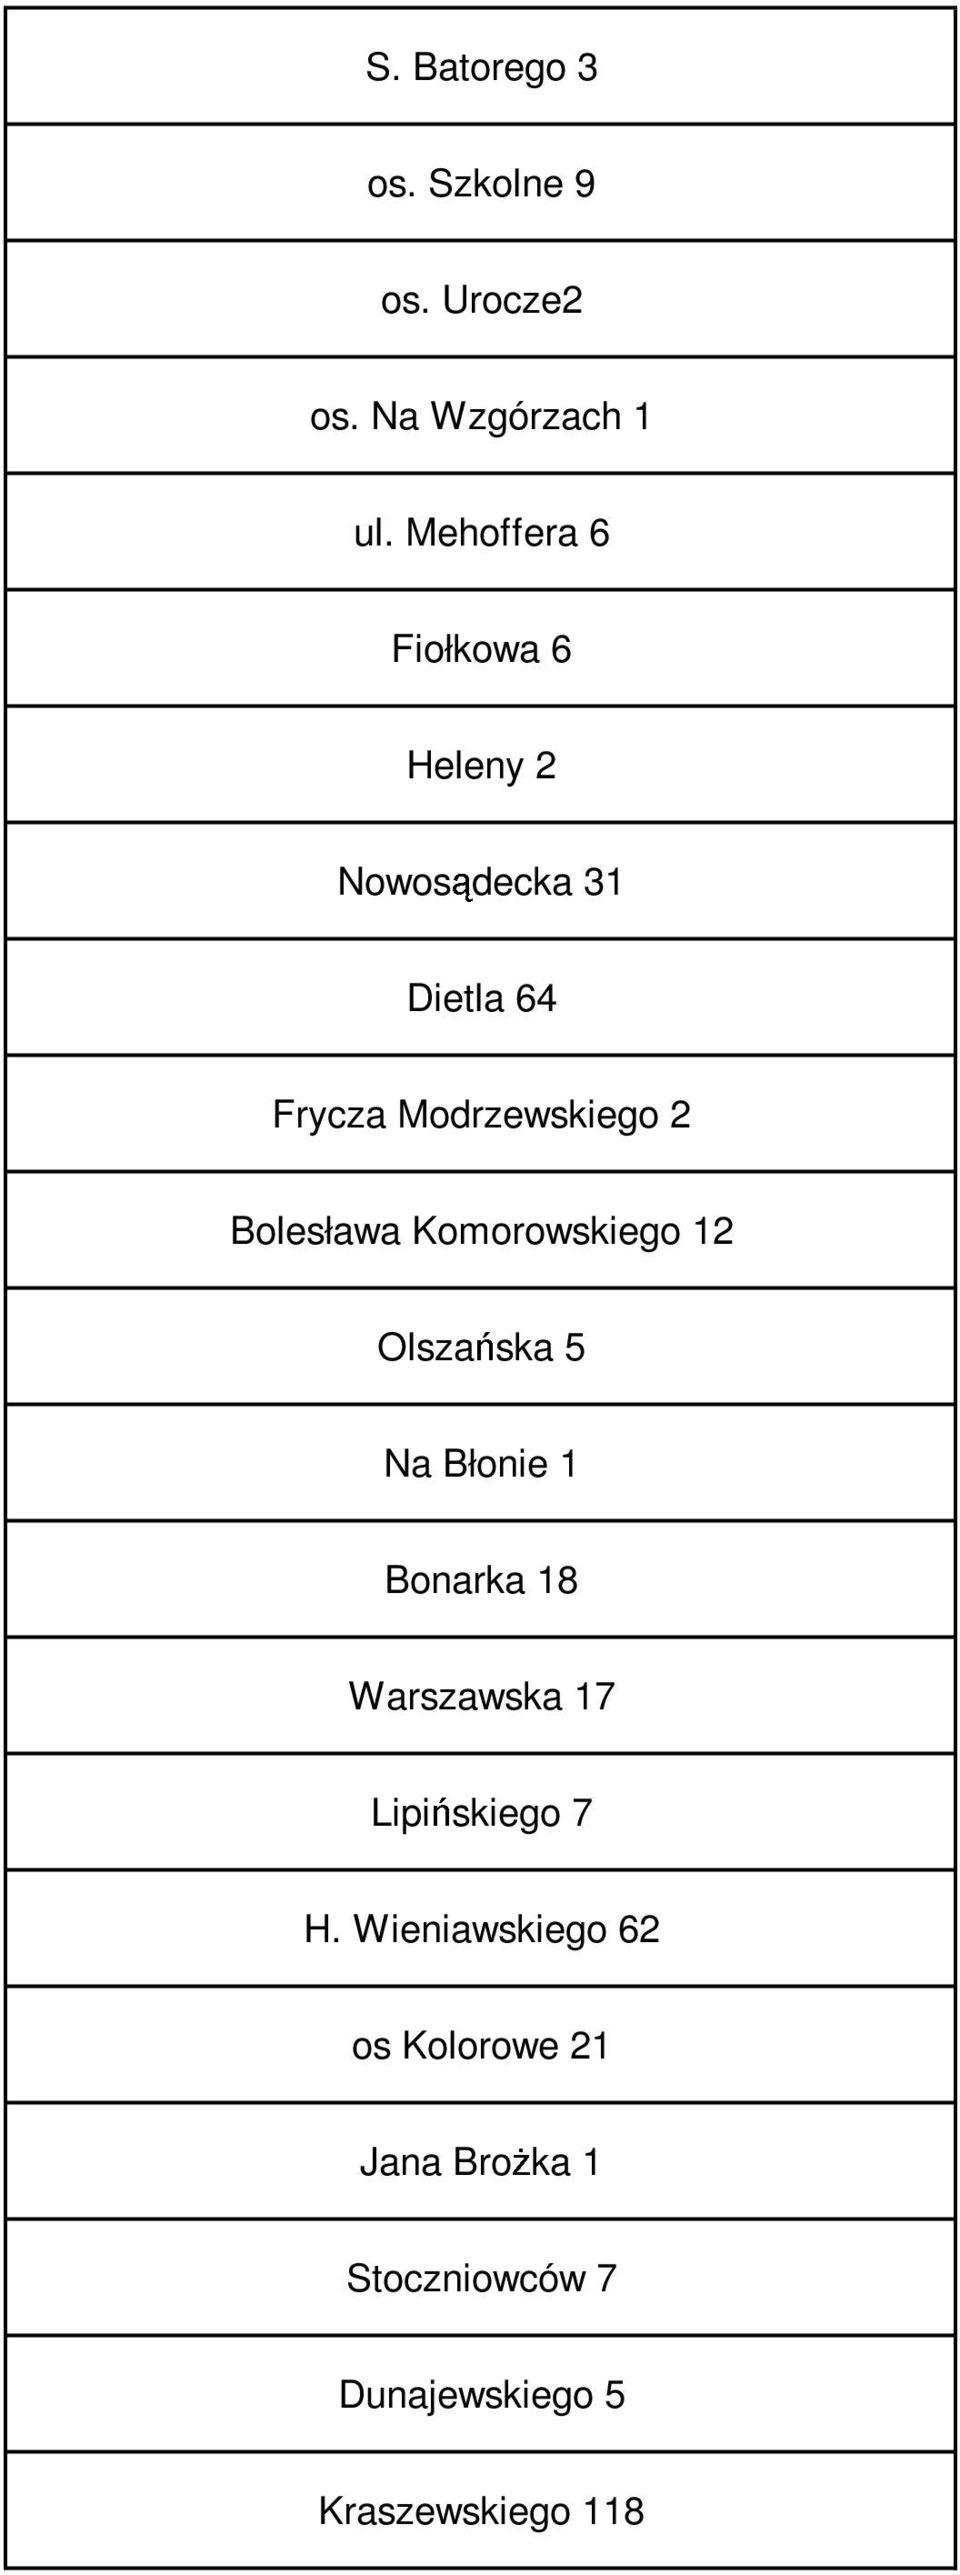 Bolesława Komorowskiego 12 Olszańska 5 Na Błonie 1 Bonarka 18 Warszawska 17